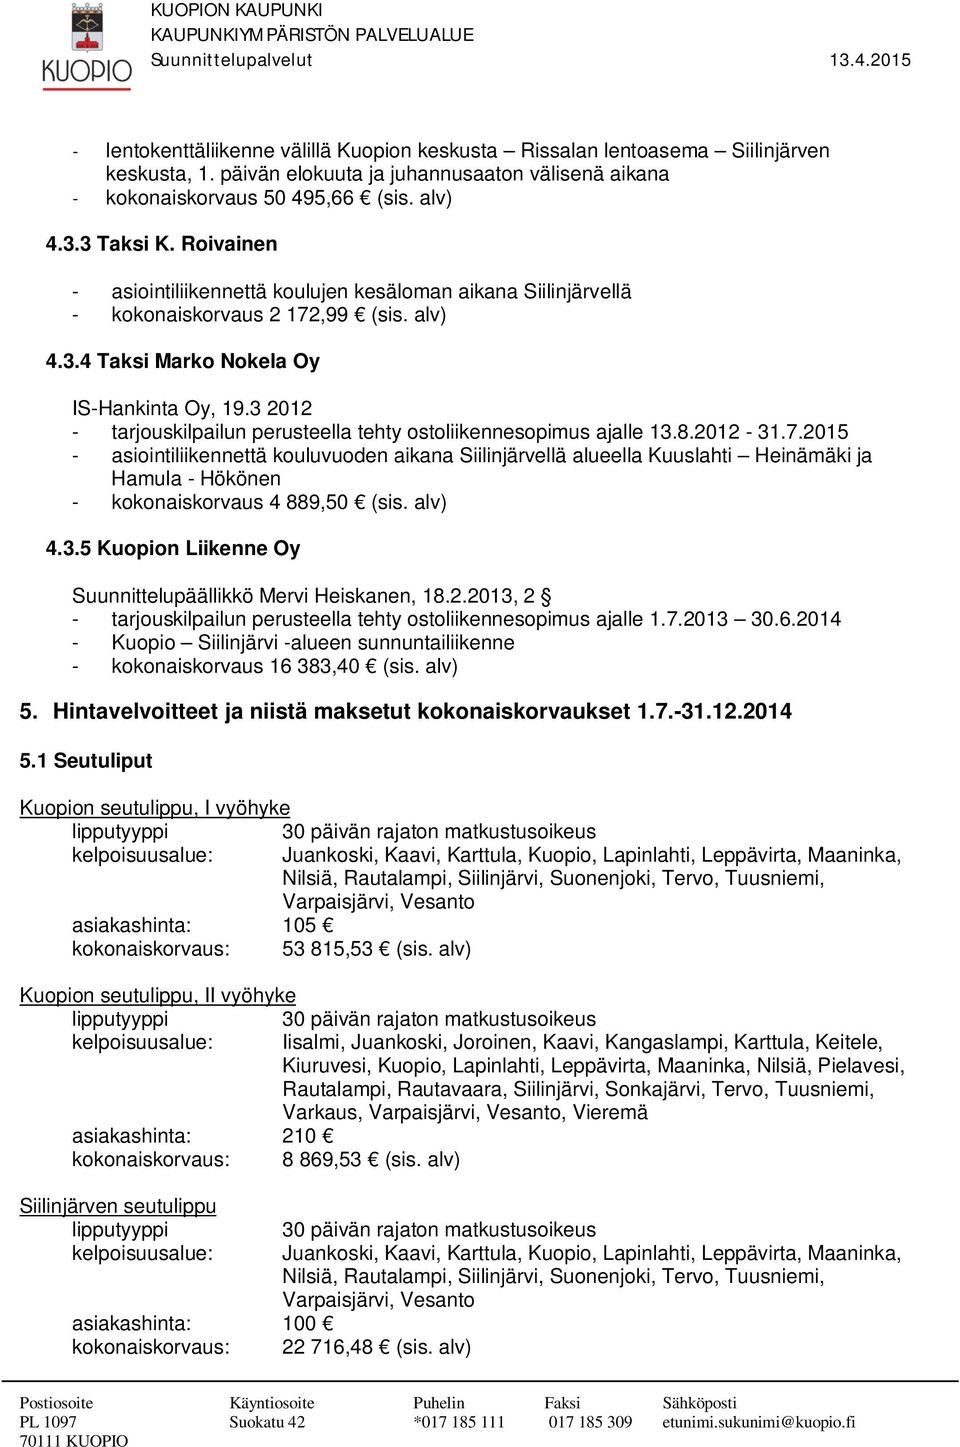 3 2012 - tarjouskilpailun perusteella tehty ostoliikennesopimus ajalle 13.8.2012-31.7.